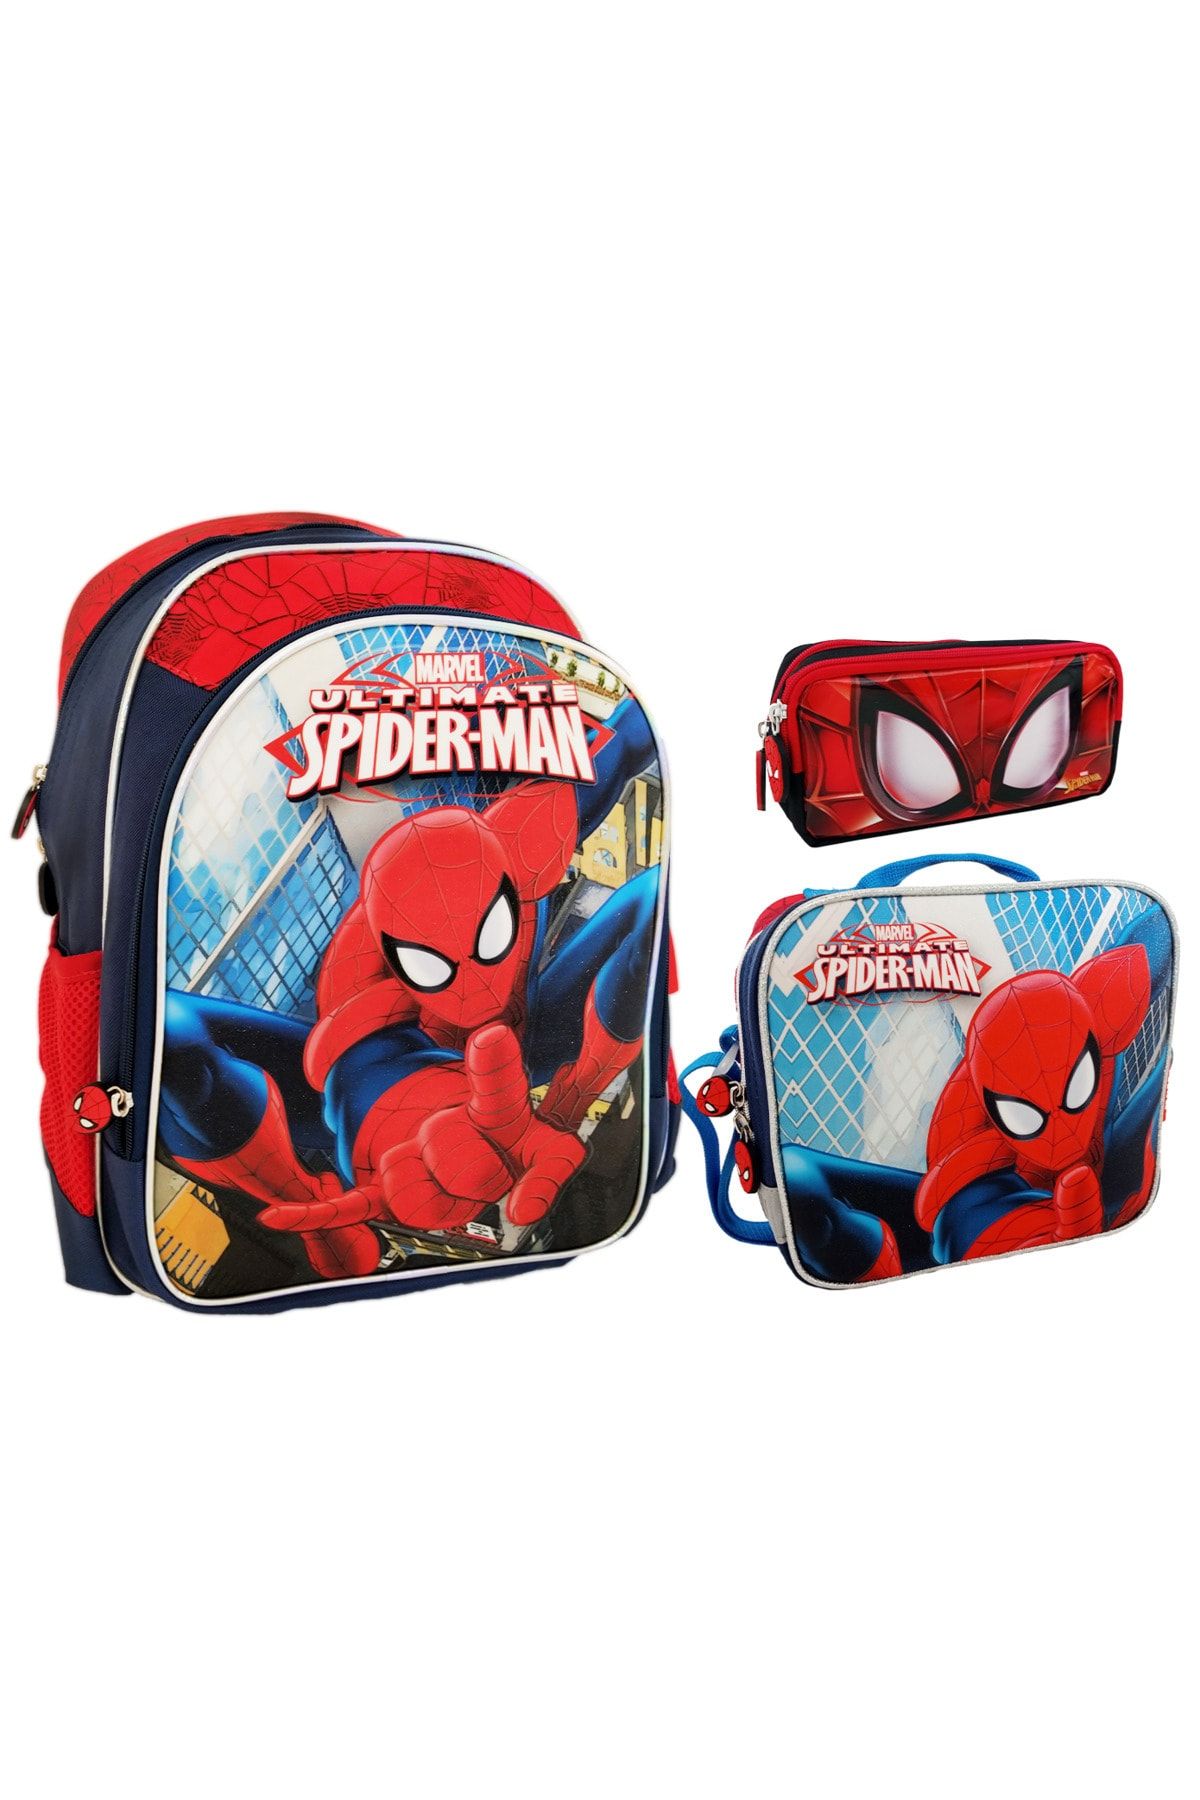 DİSNEY Spiderman Okul Sırt Çantası Beslenme Çantası Kalemlik Kalem Çantası 3'lü Set